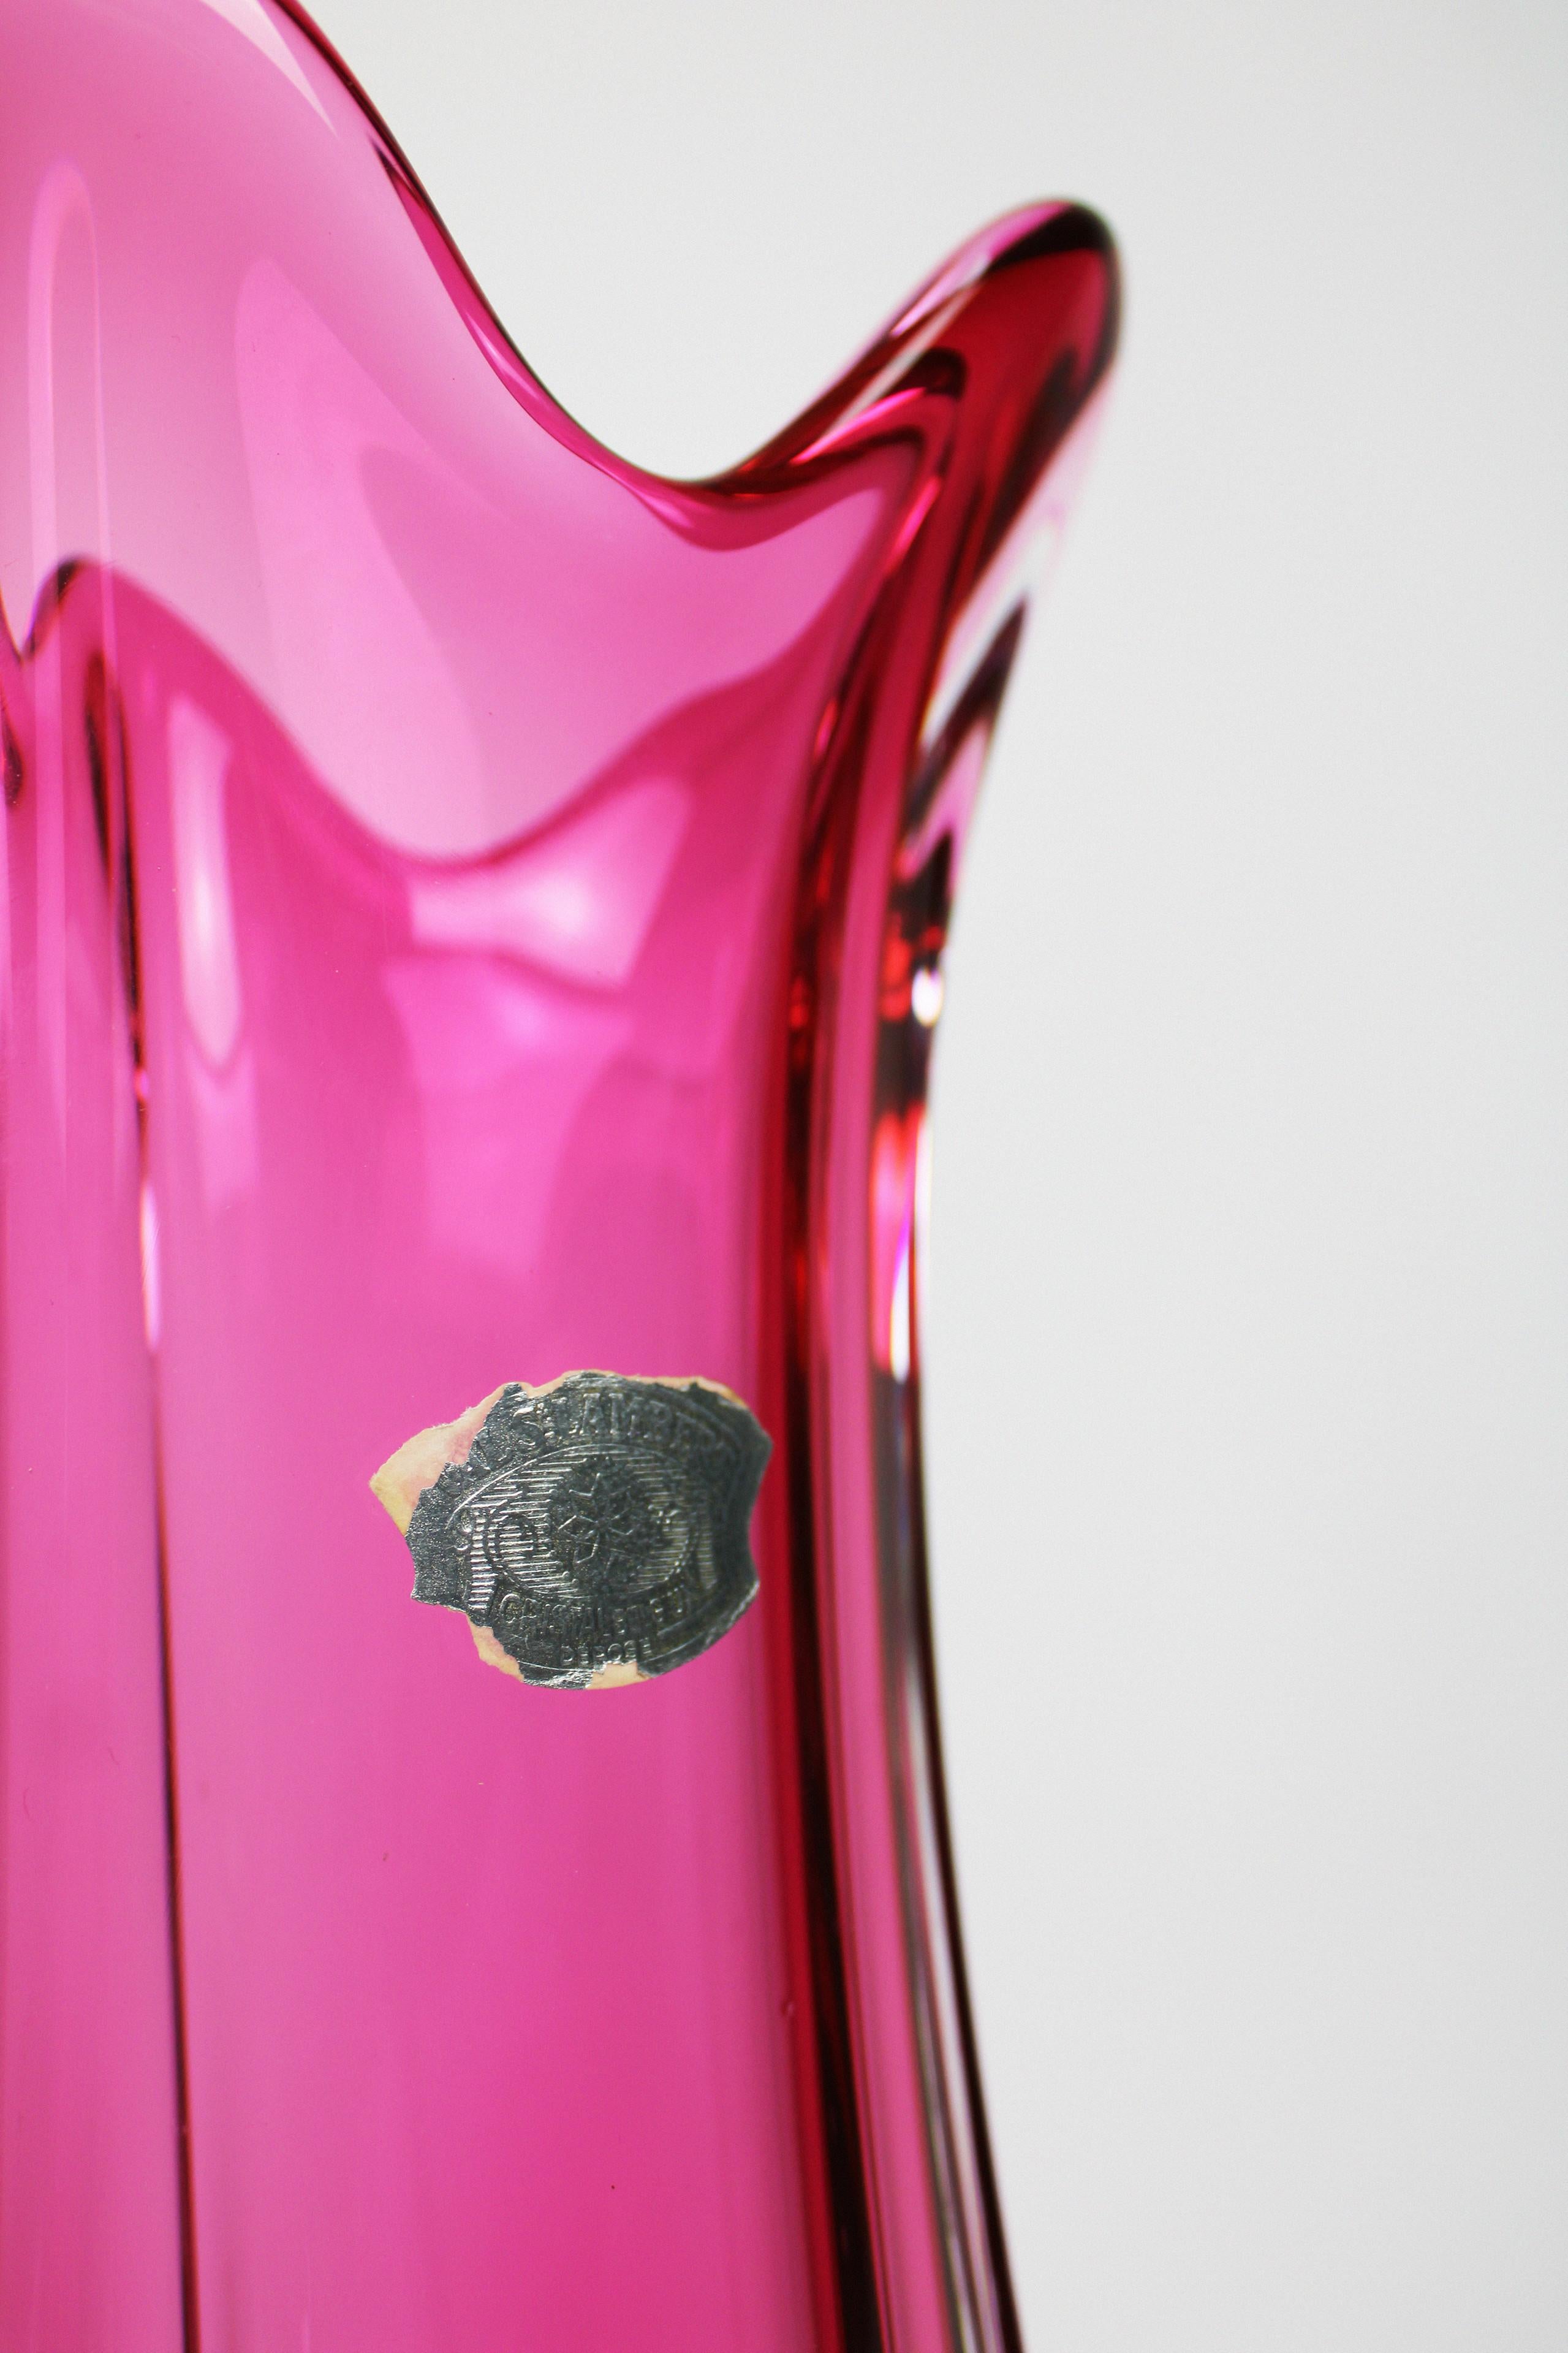 Val St Lambert Vase Art Crystal Glass Pink Vintage Art Deco 1950's Belgium In Good Condition For Sale In Antwerpen, BE